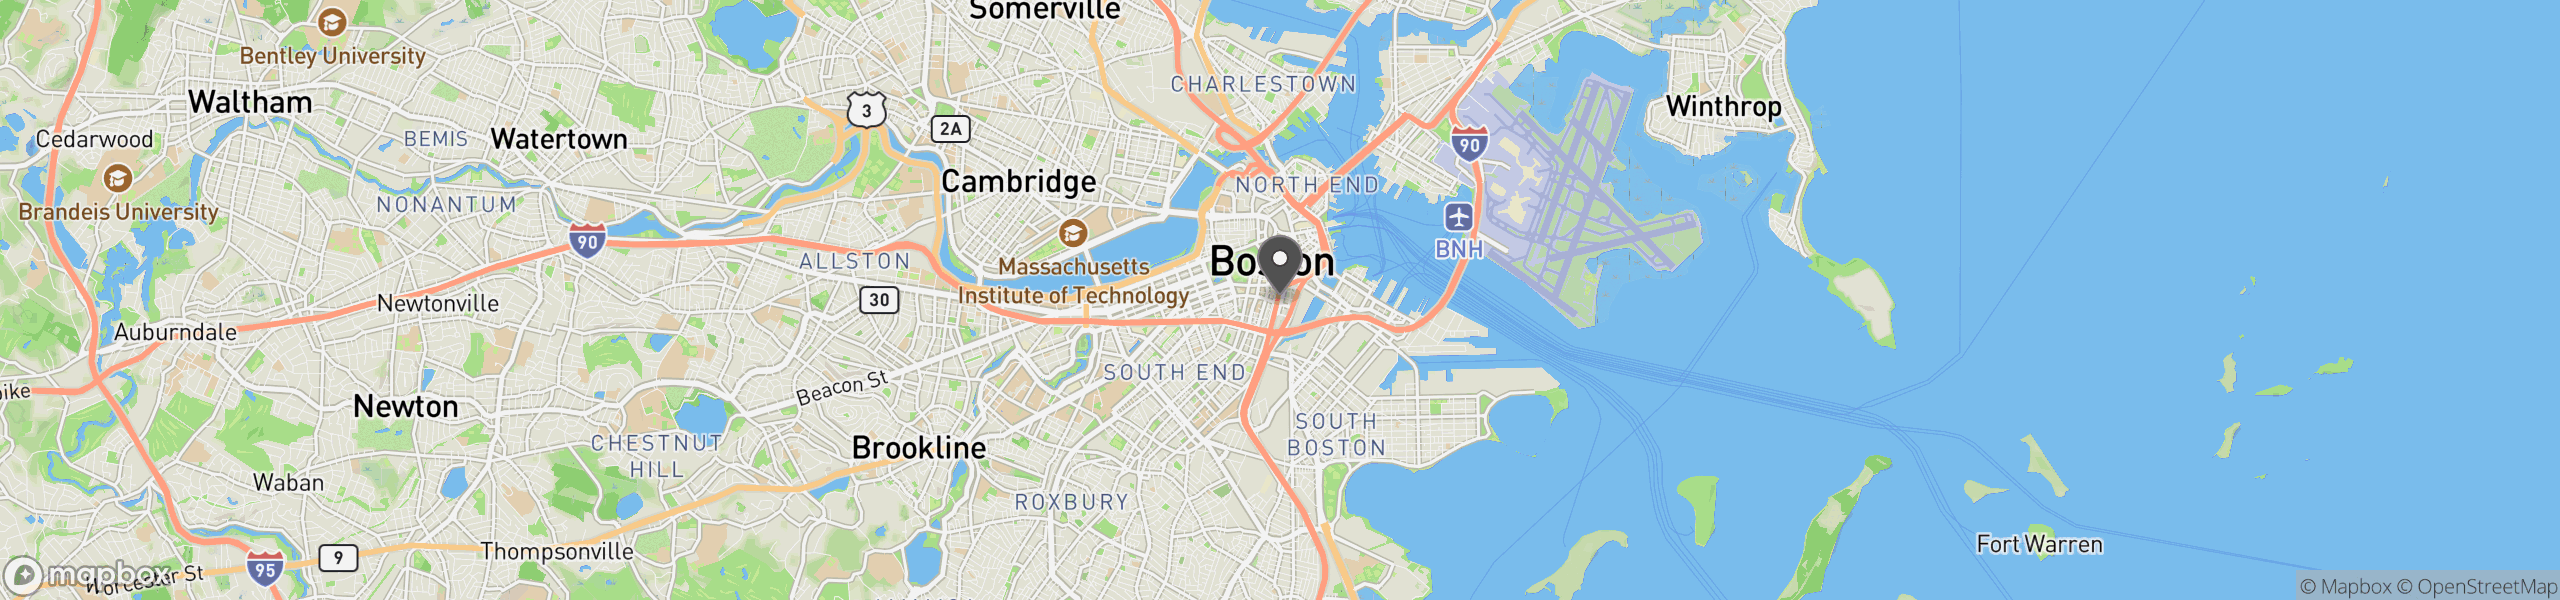 Boston, MA 02111